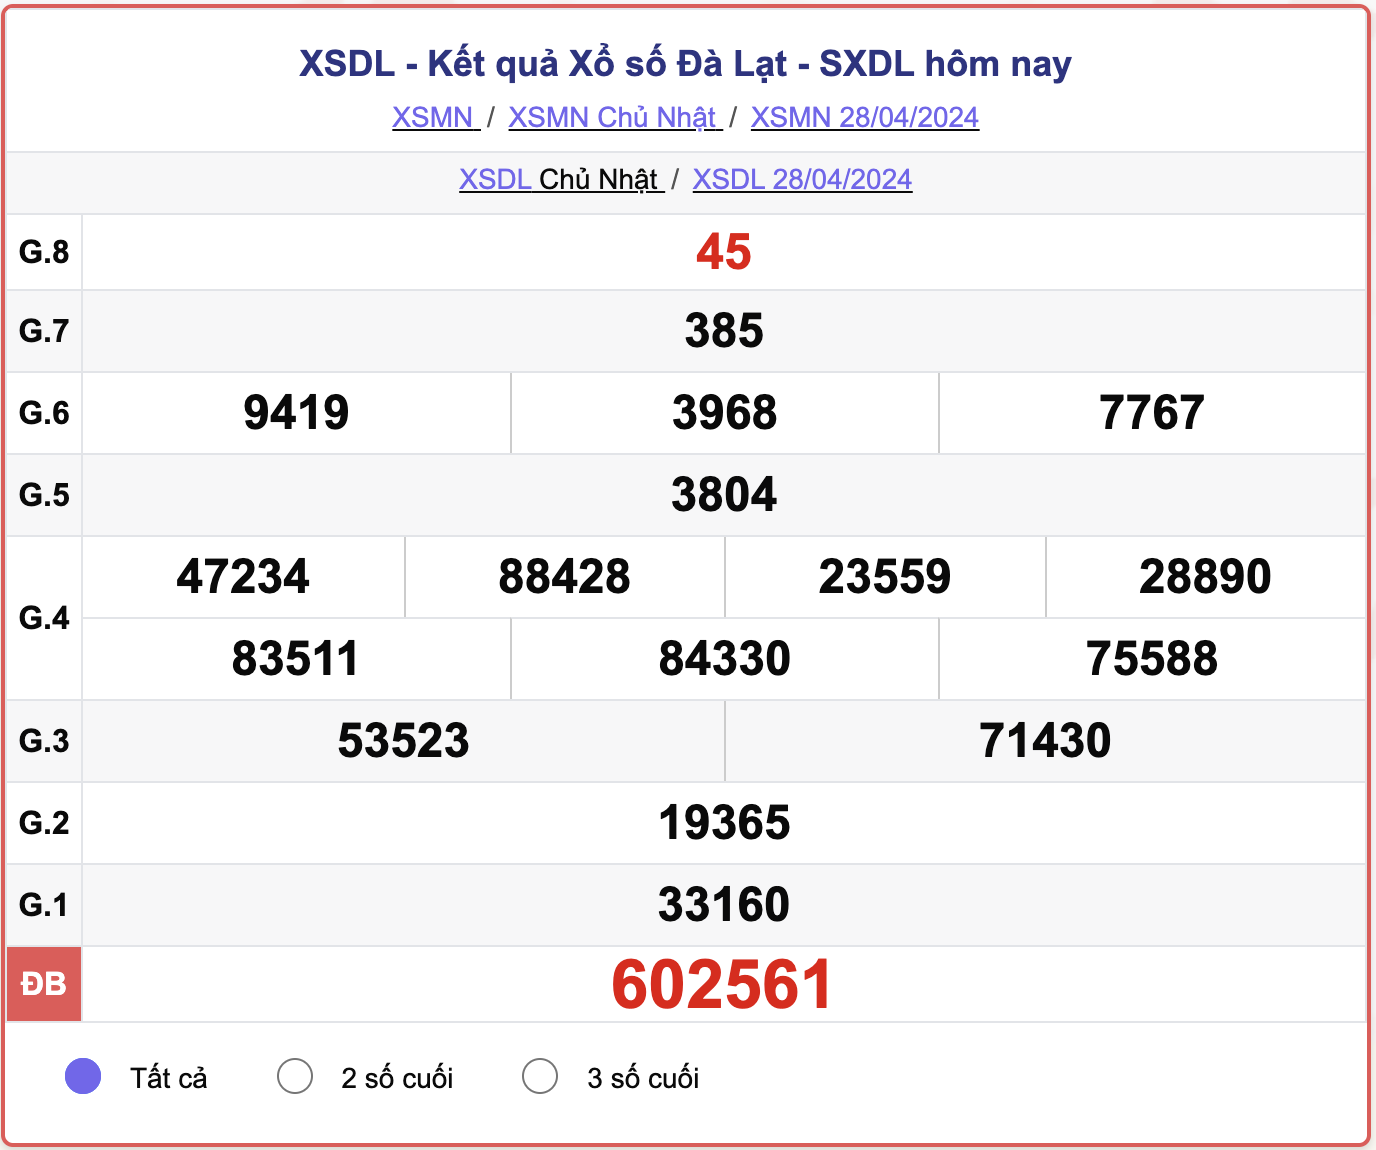 XSDL Chủ nhật, kết quả xổ số Đà Lạt ngày 28/4/2024.